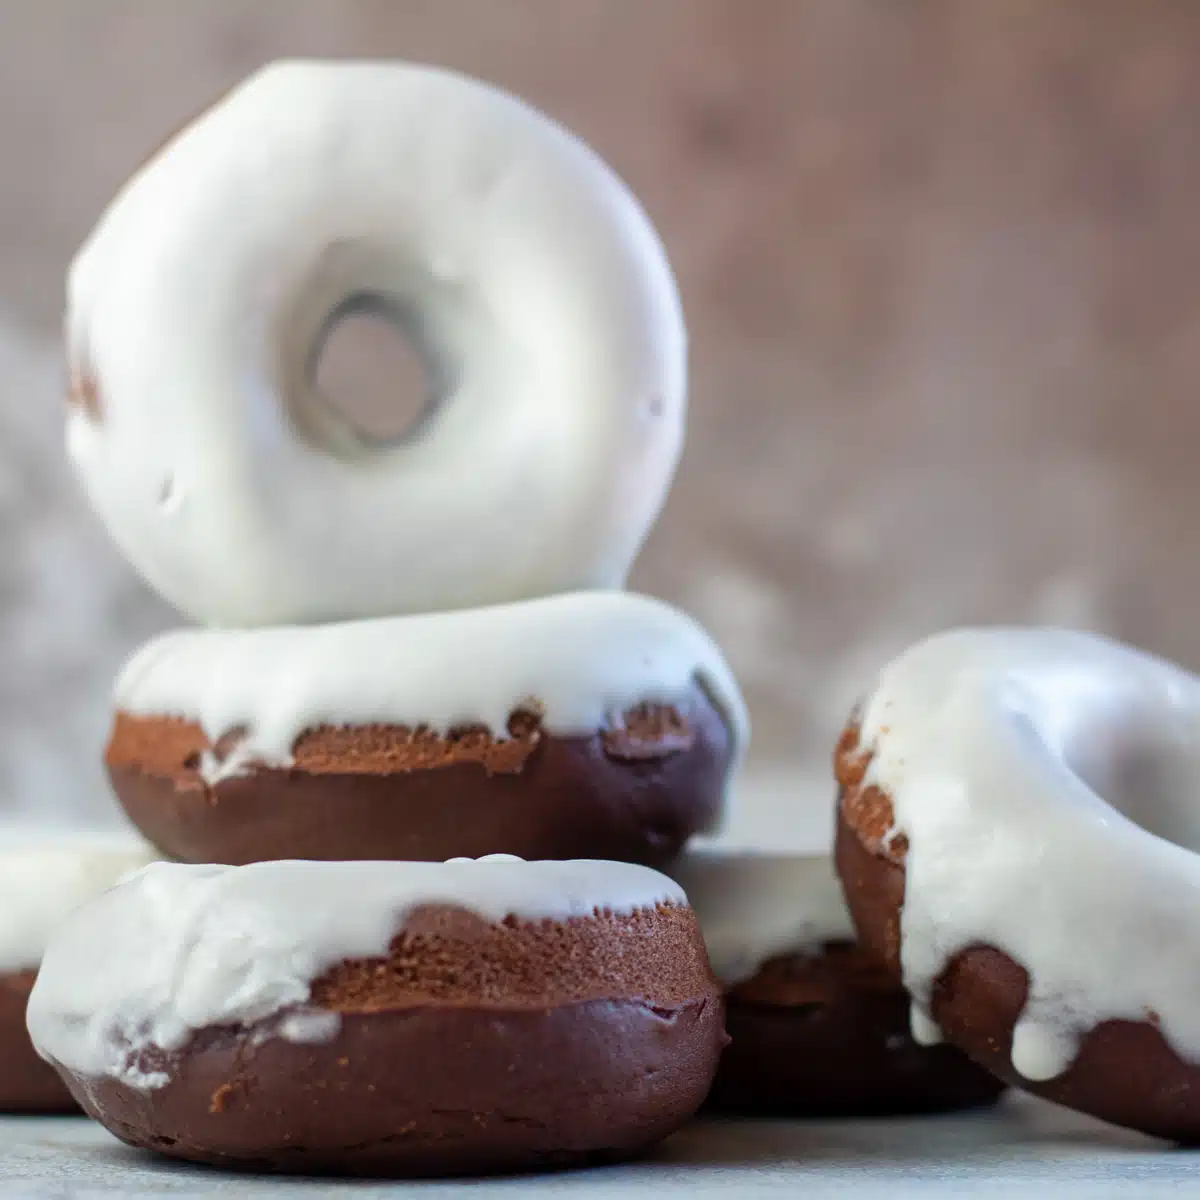 Квадратное изображение пончиков, запеченных в шоколаде.